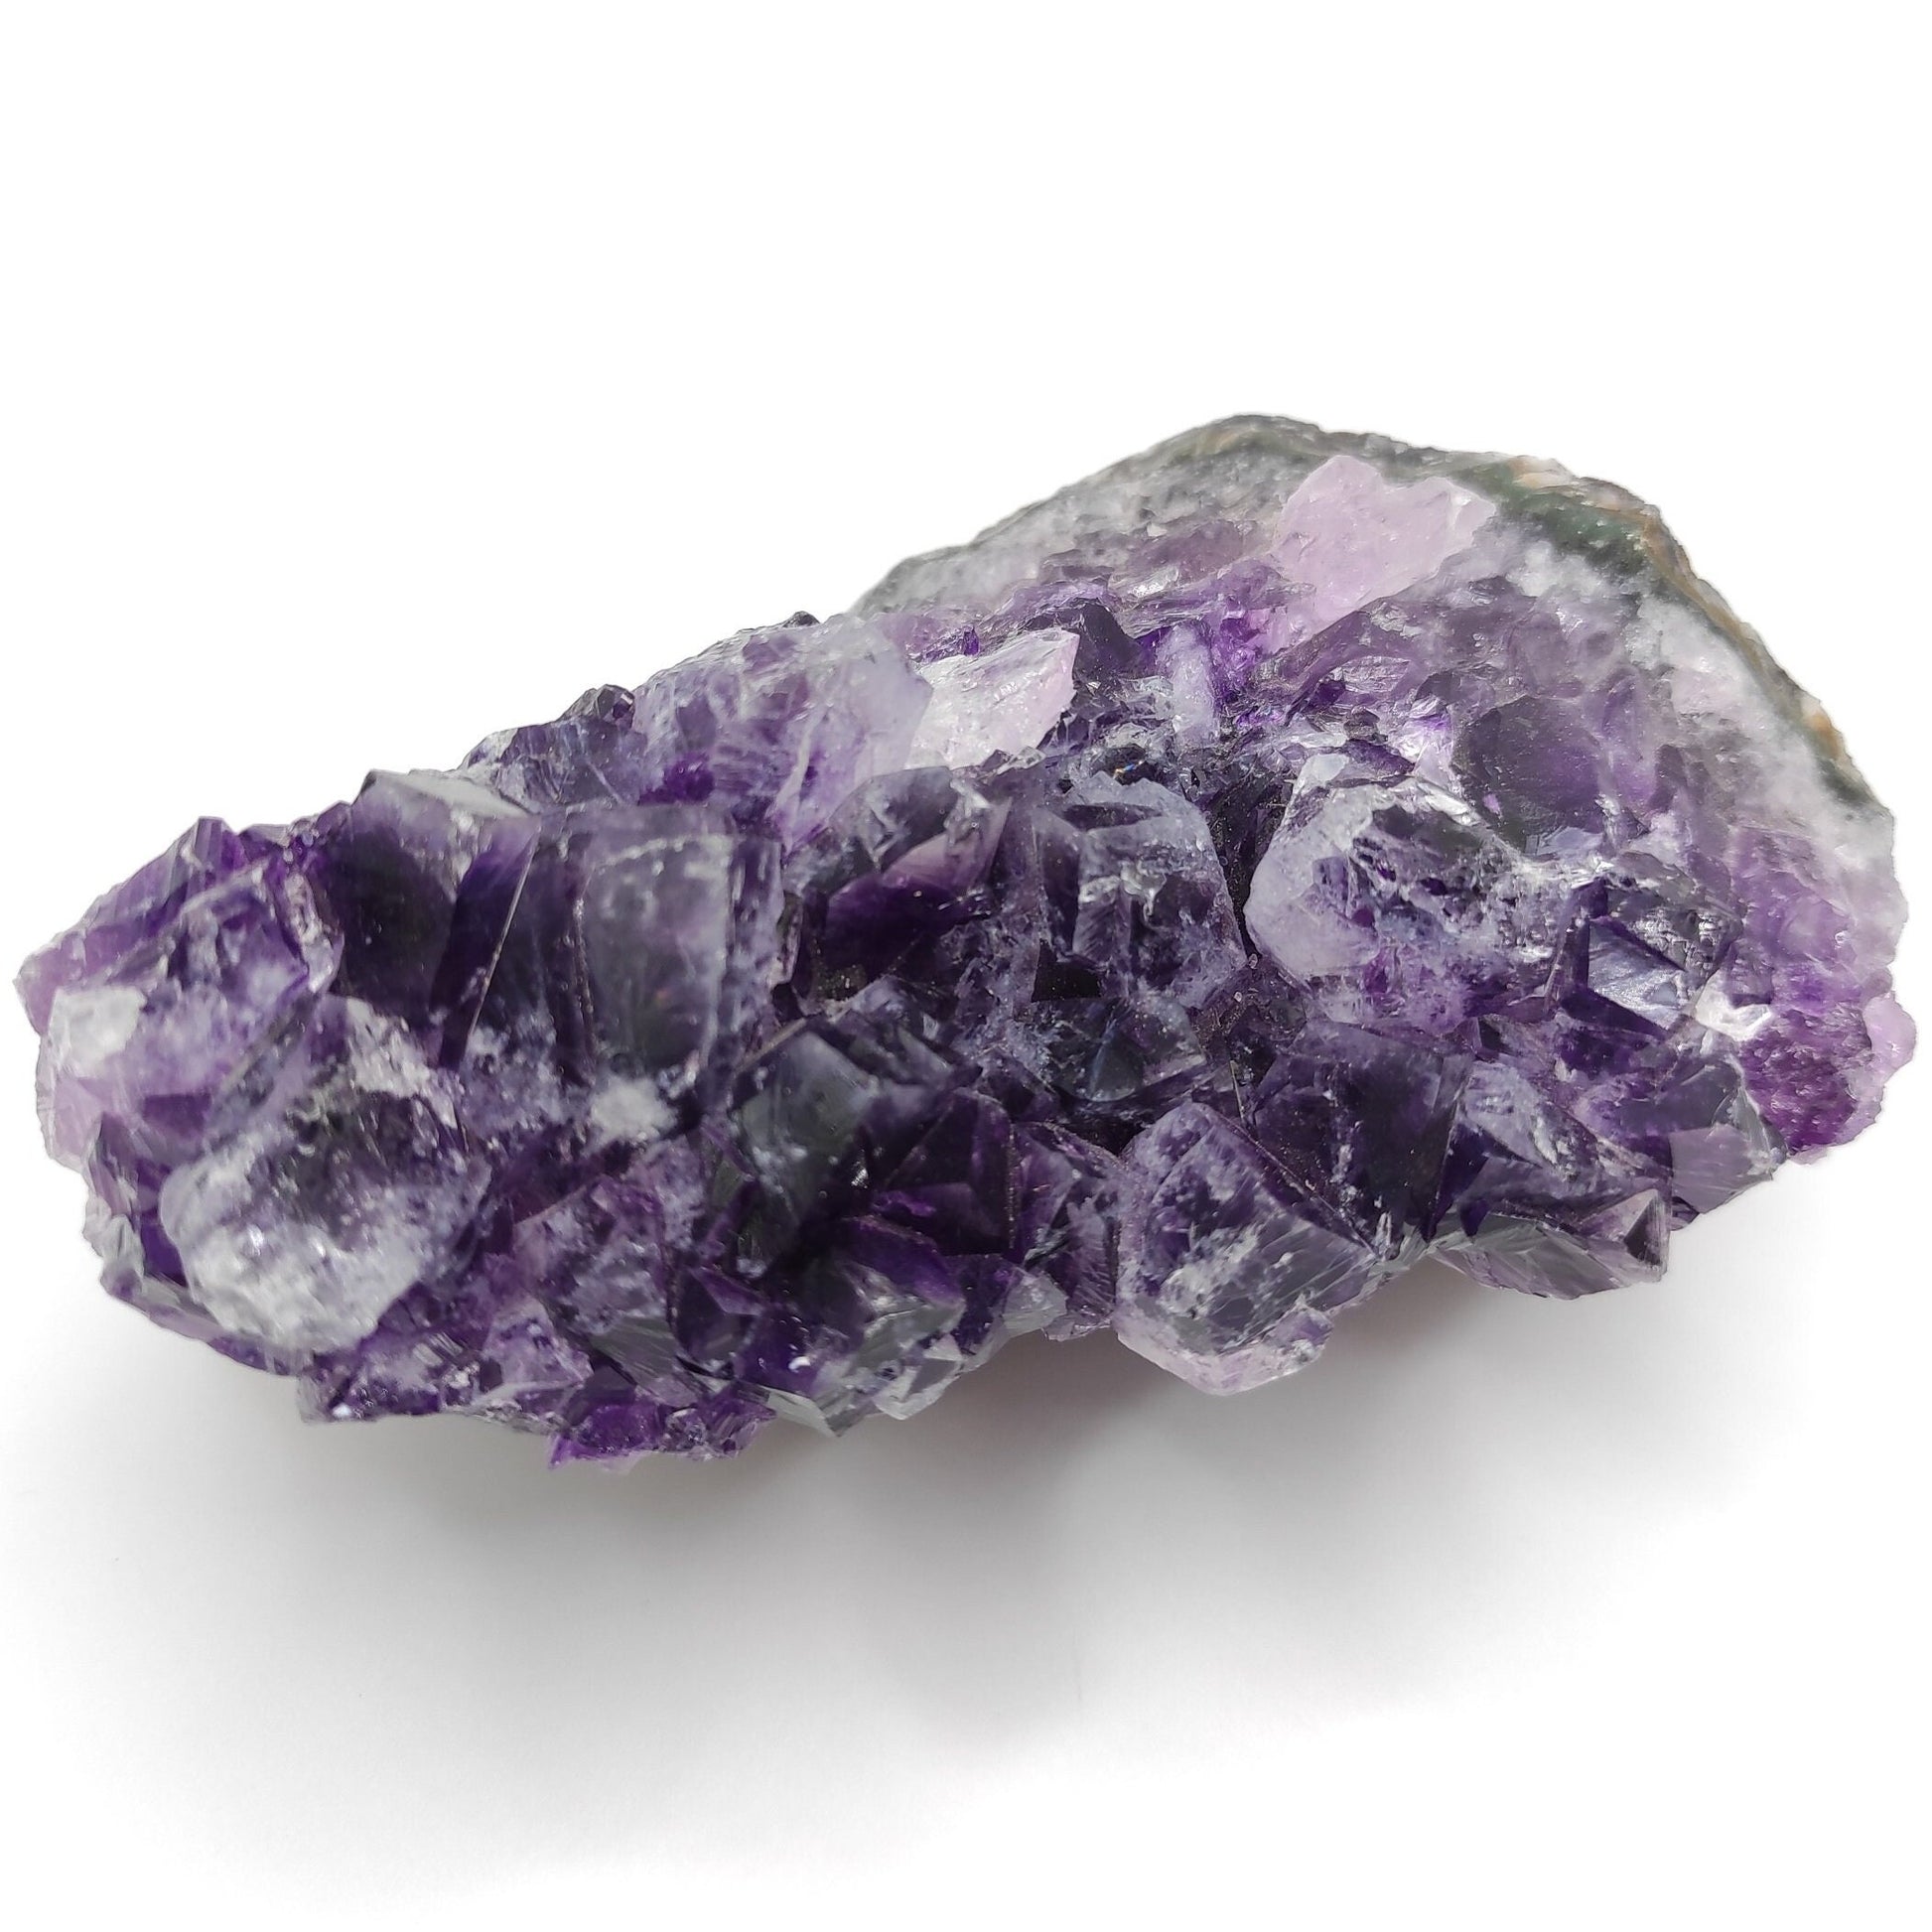 608g Amethyst Crystal Cluster Purple Amethyst from South Brazil Amethyst Gemstone Raw Amethyst Rough Amethyst Desk Crystal Natural Crystals